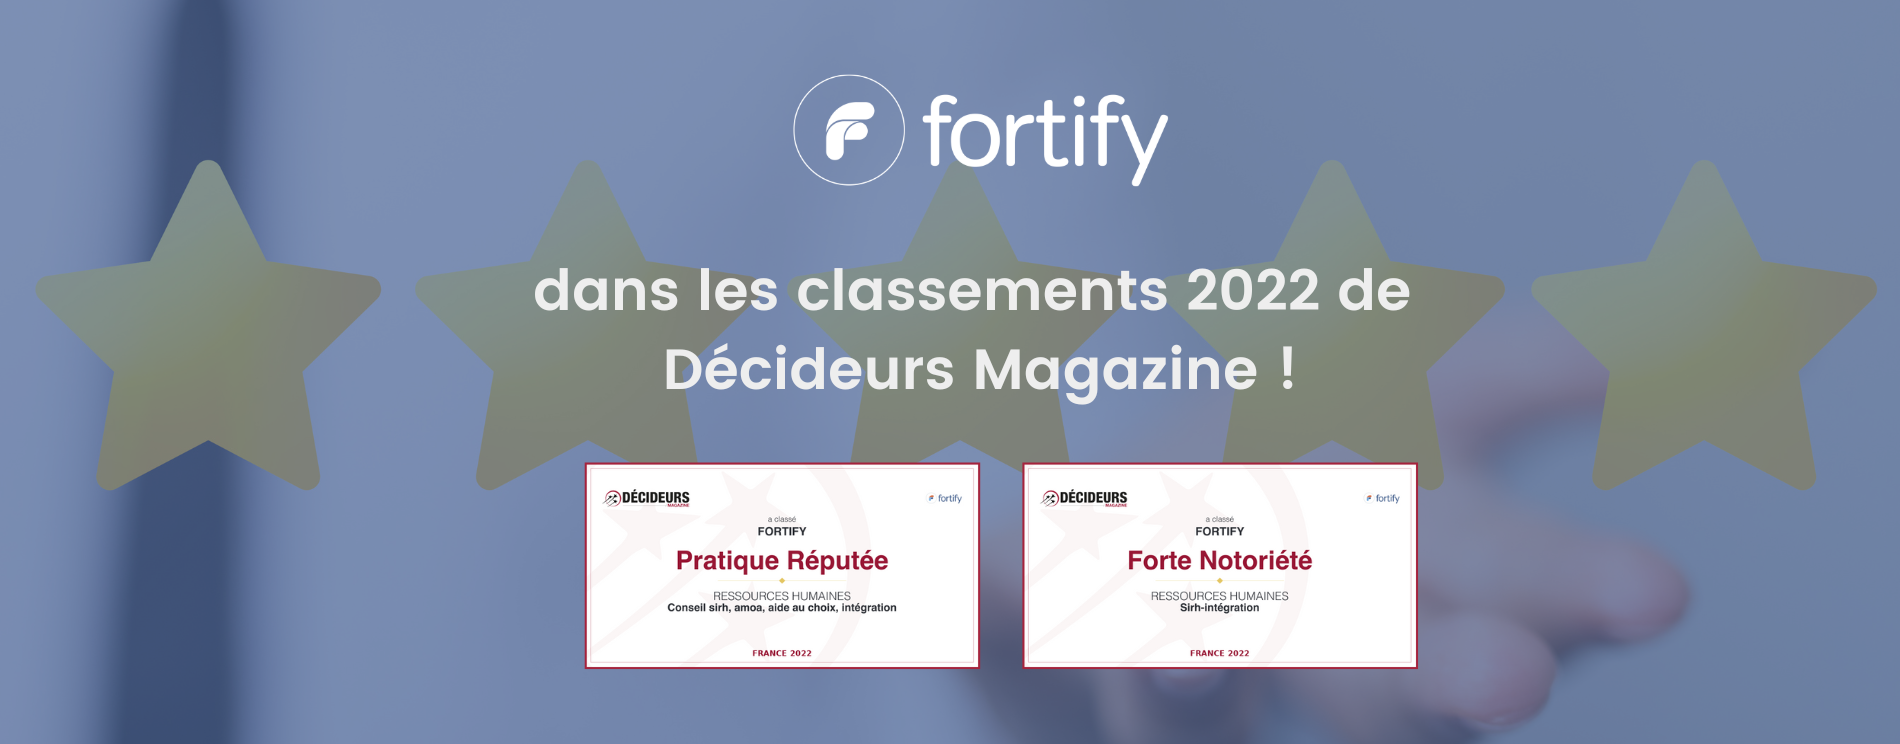 Fortify classement décideurs Magazine